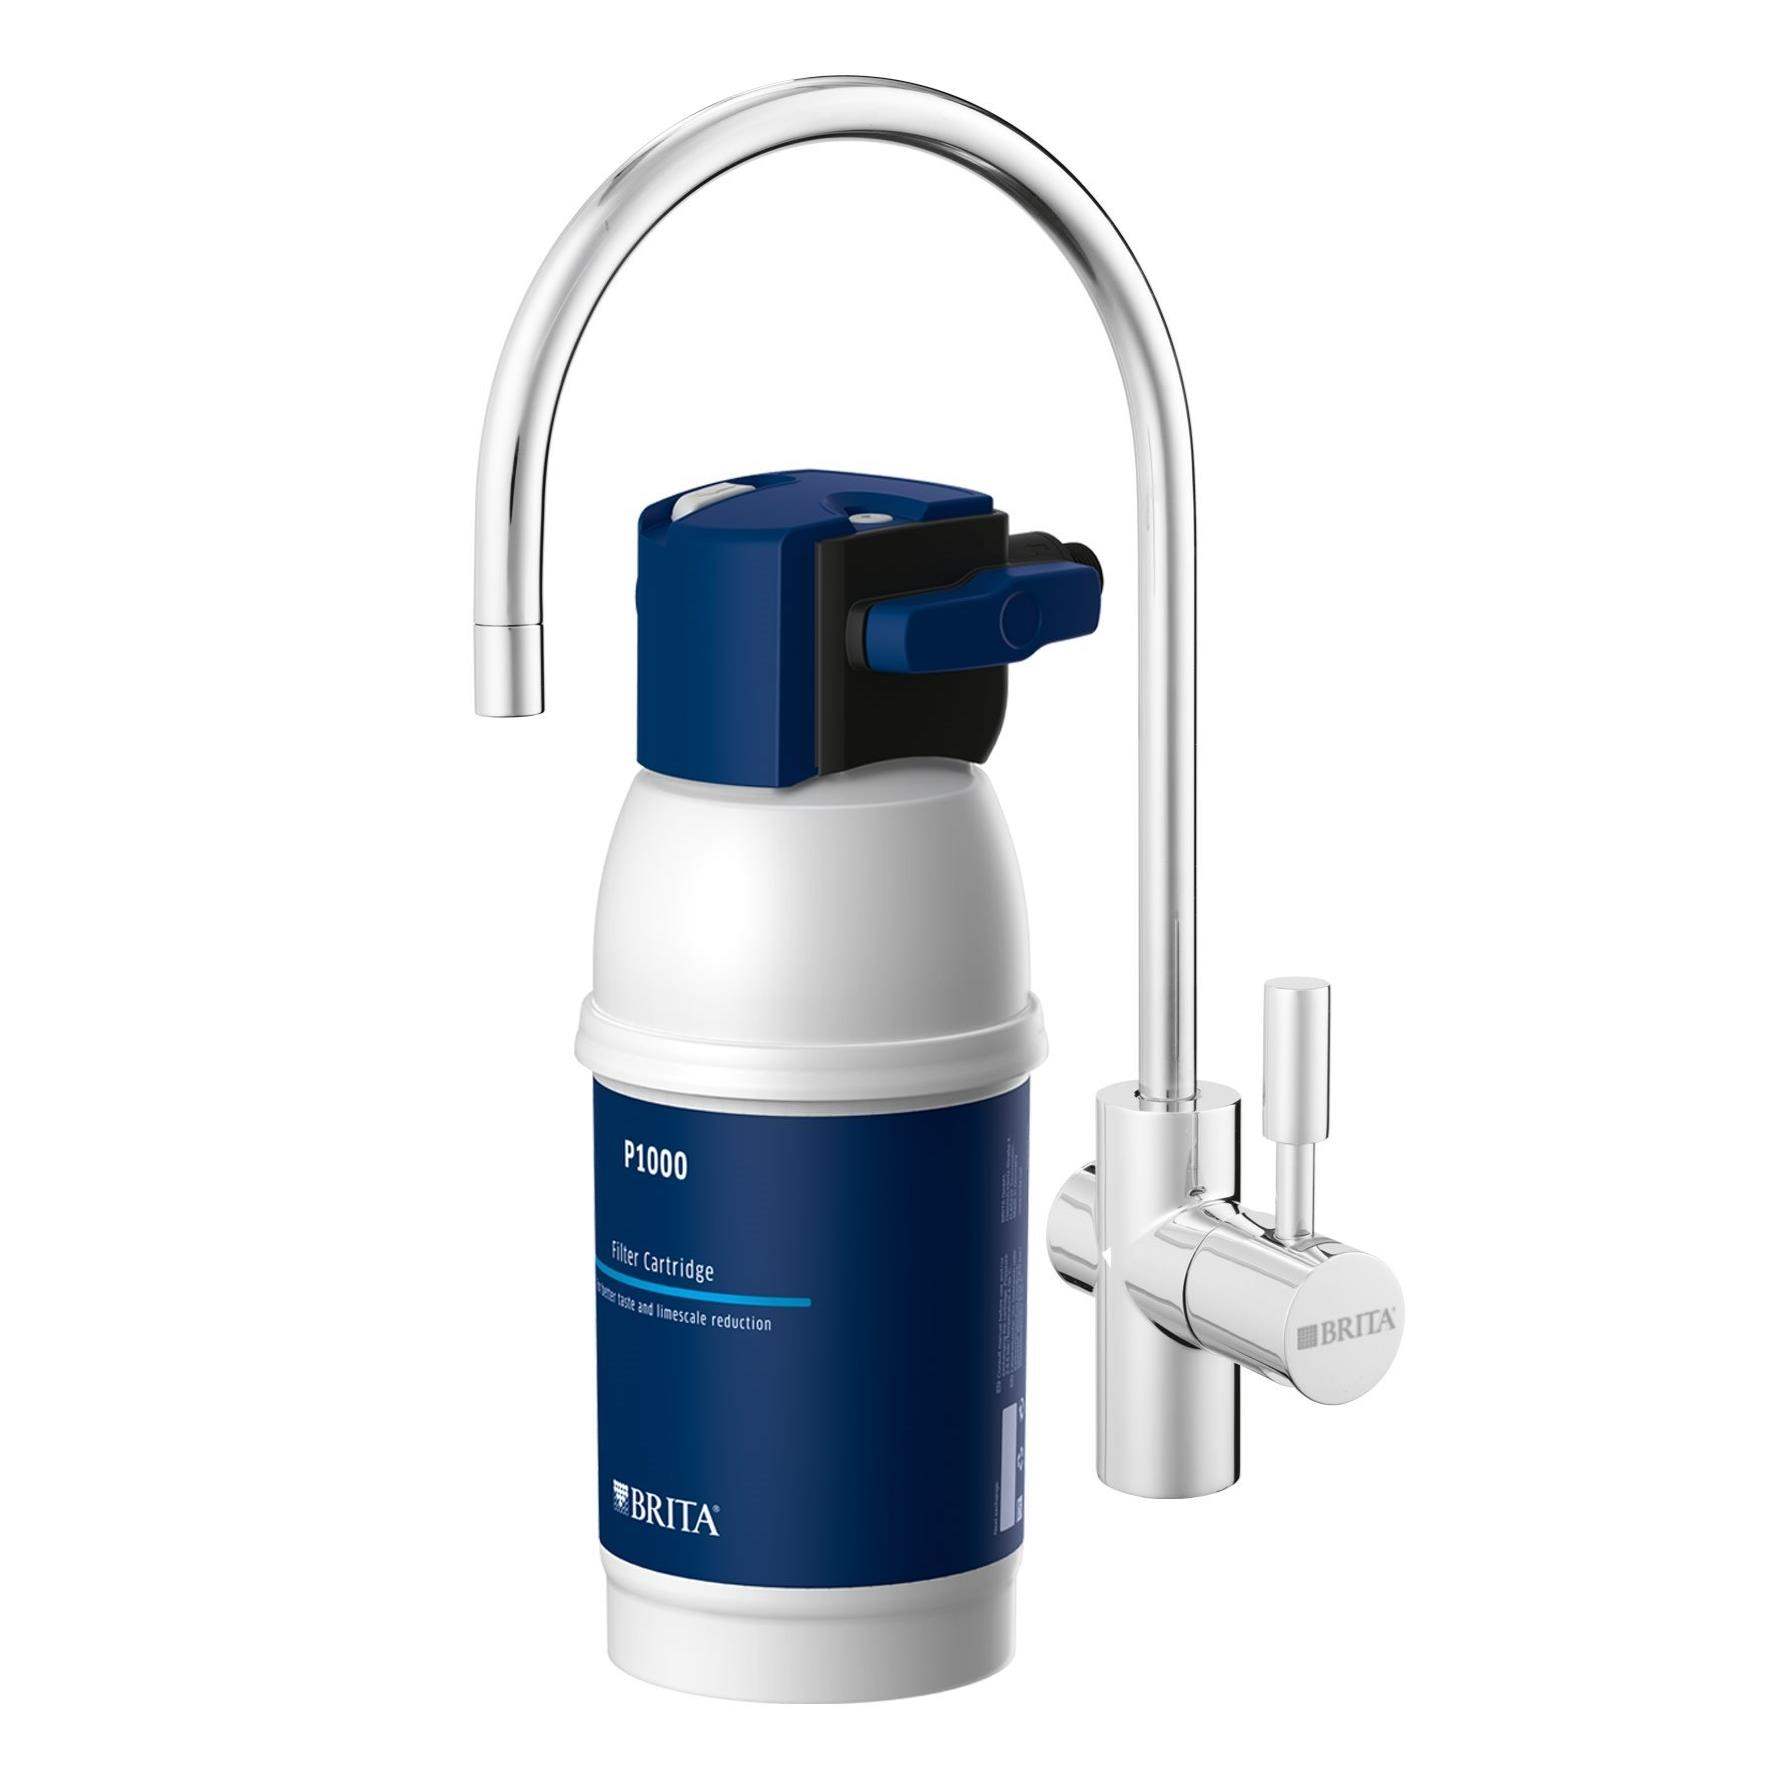 Brita MyPure P1 vodní filtr pod dřez s kohoutkem,  LED indikátor,  3 různá nastavení filtrování podle tvrdosti vody1 